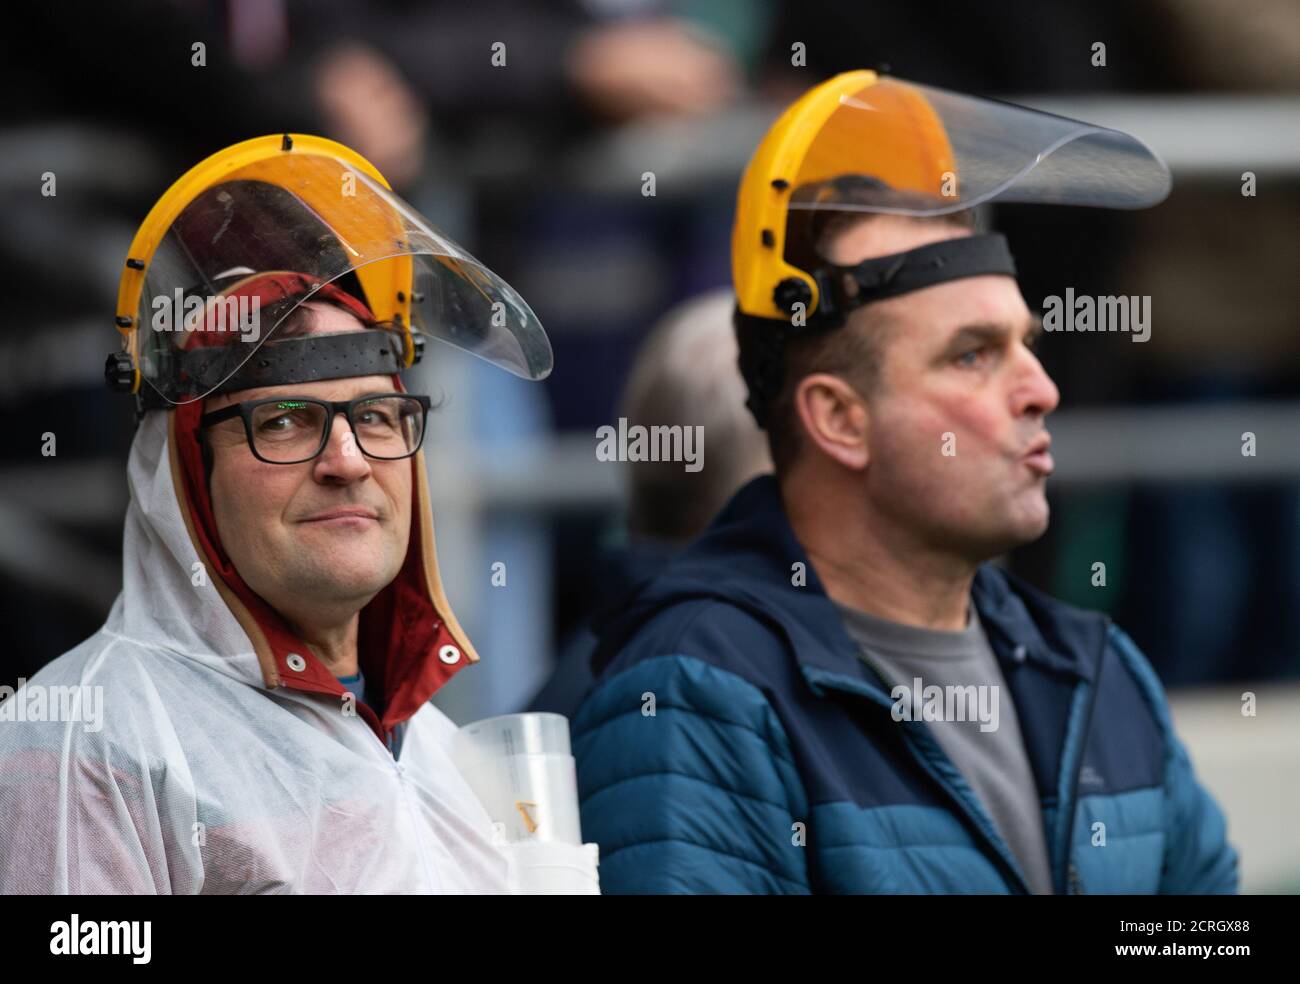 Rugby-Fans in Twickenham schützen sich vor dem Coronavirus BILDNACHWEIS : © MARK PAIN / ALAMY STOCK PHOTO Stockfoto